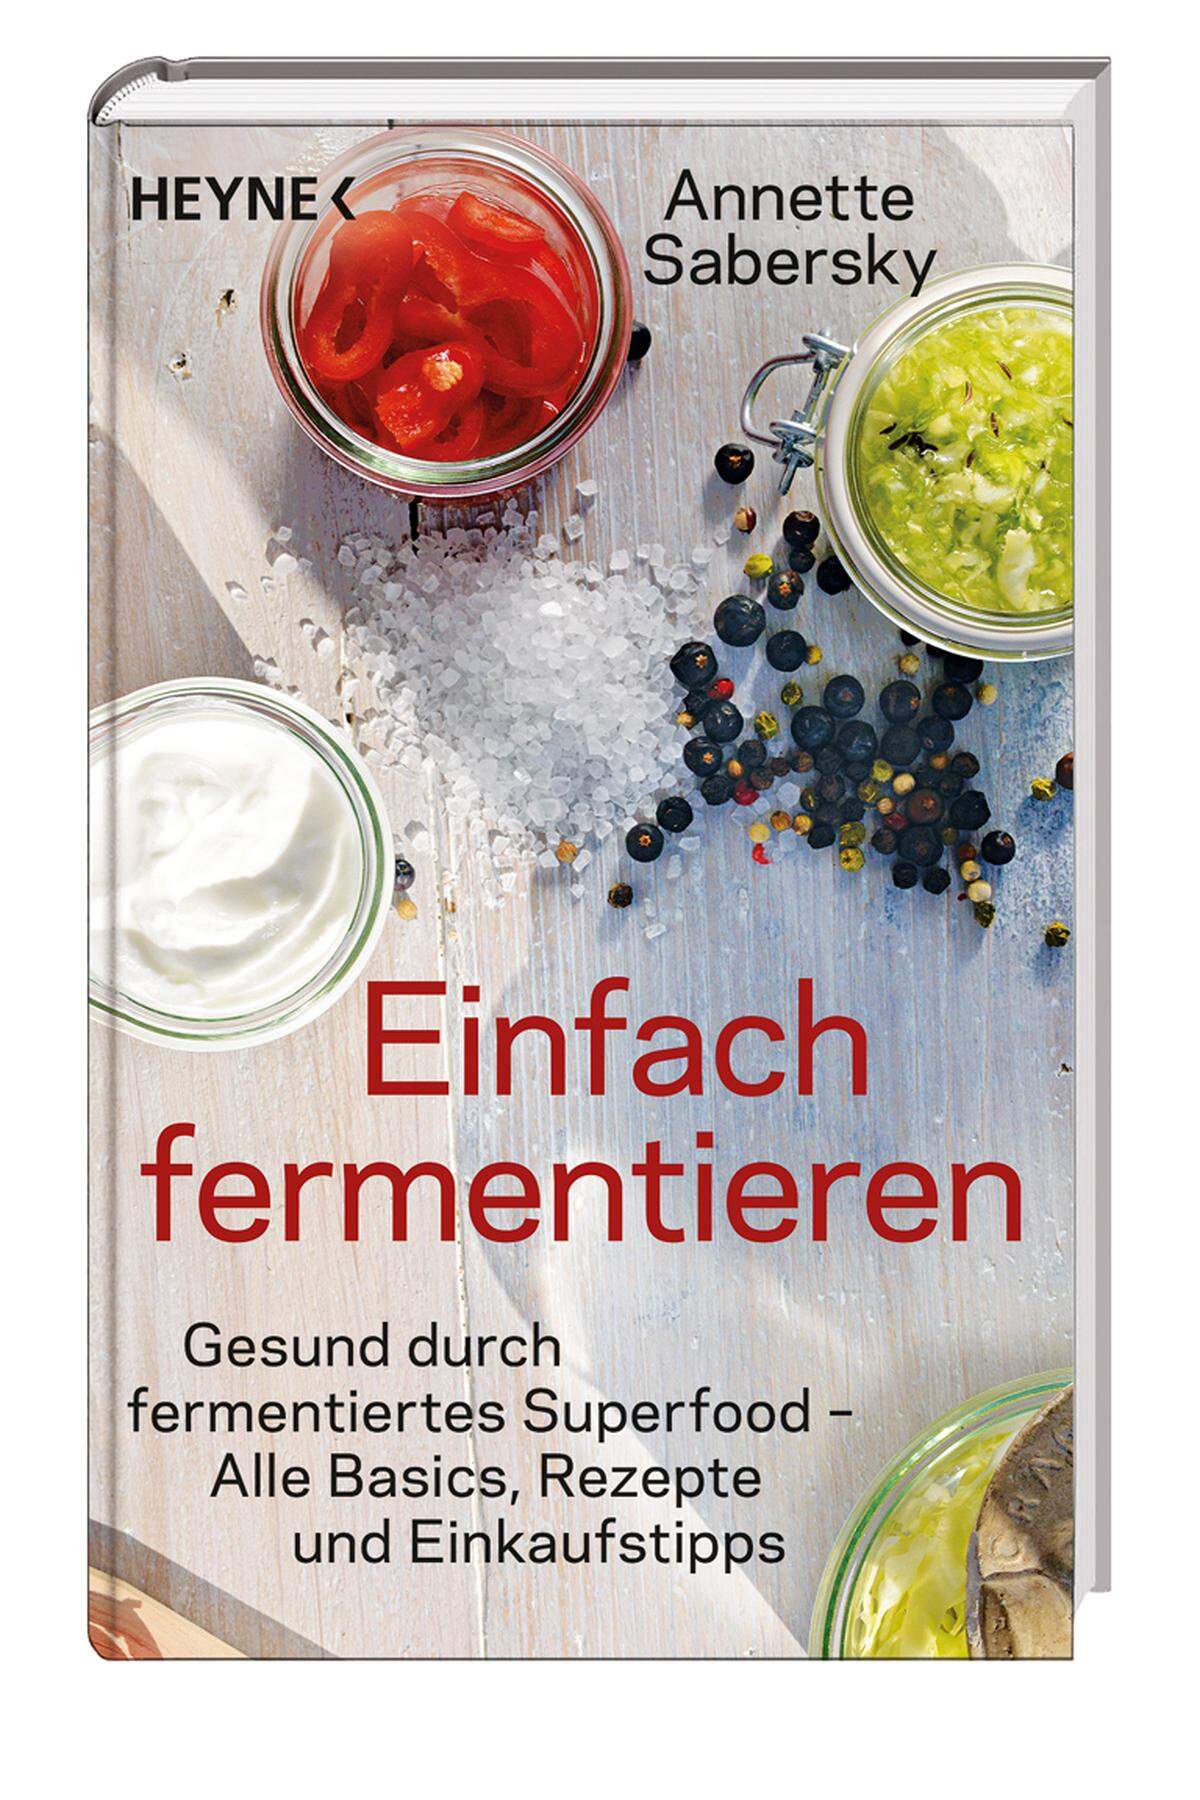  „Einfach fermentieren“, Fokus Superfood, 8,99 €.